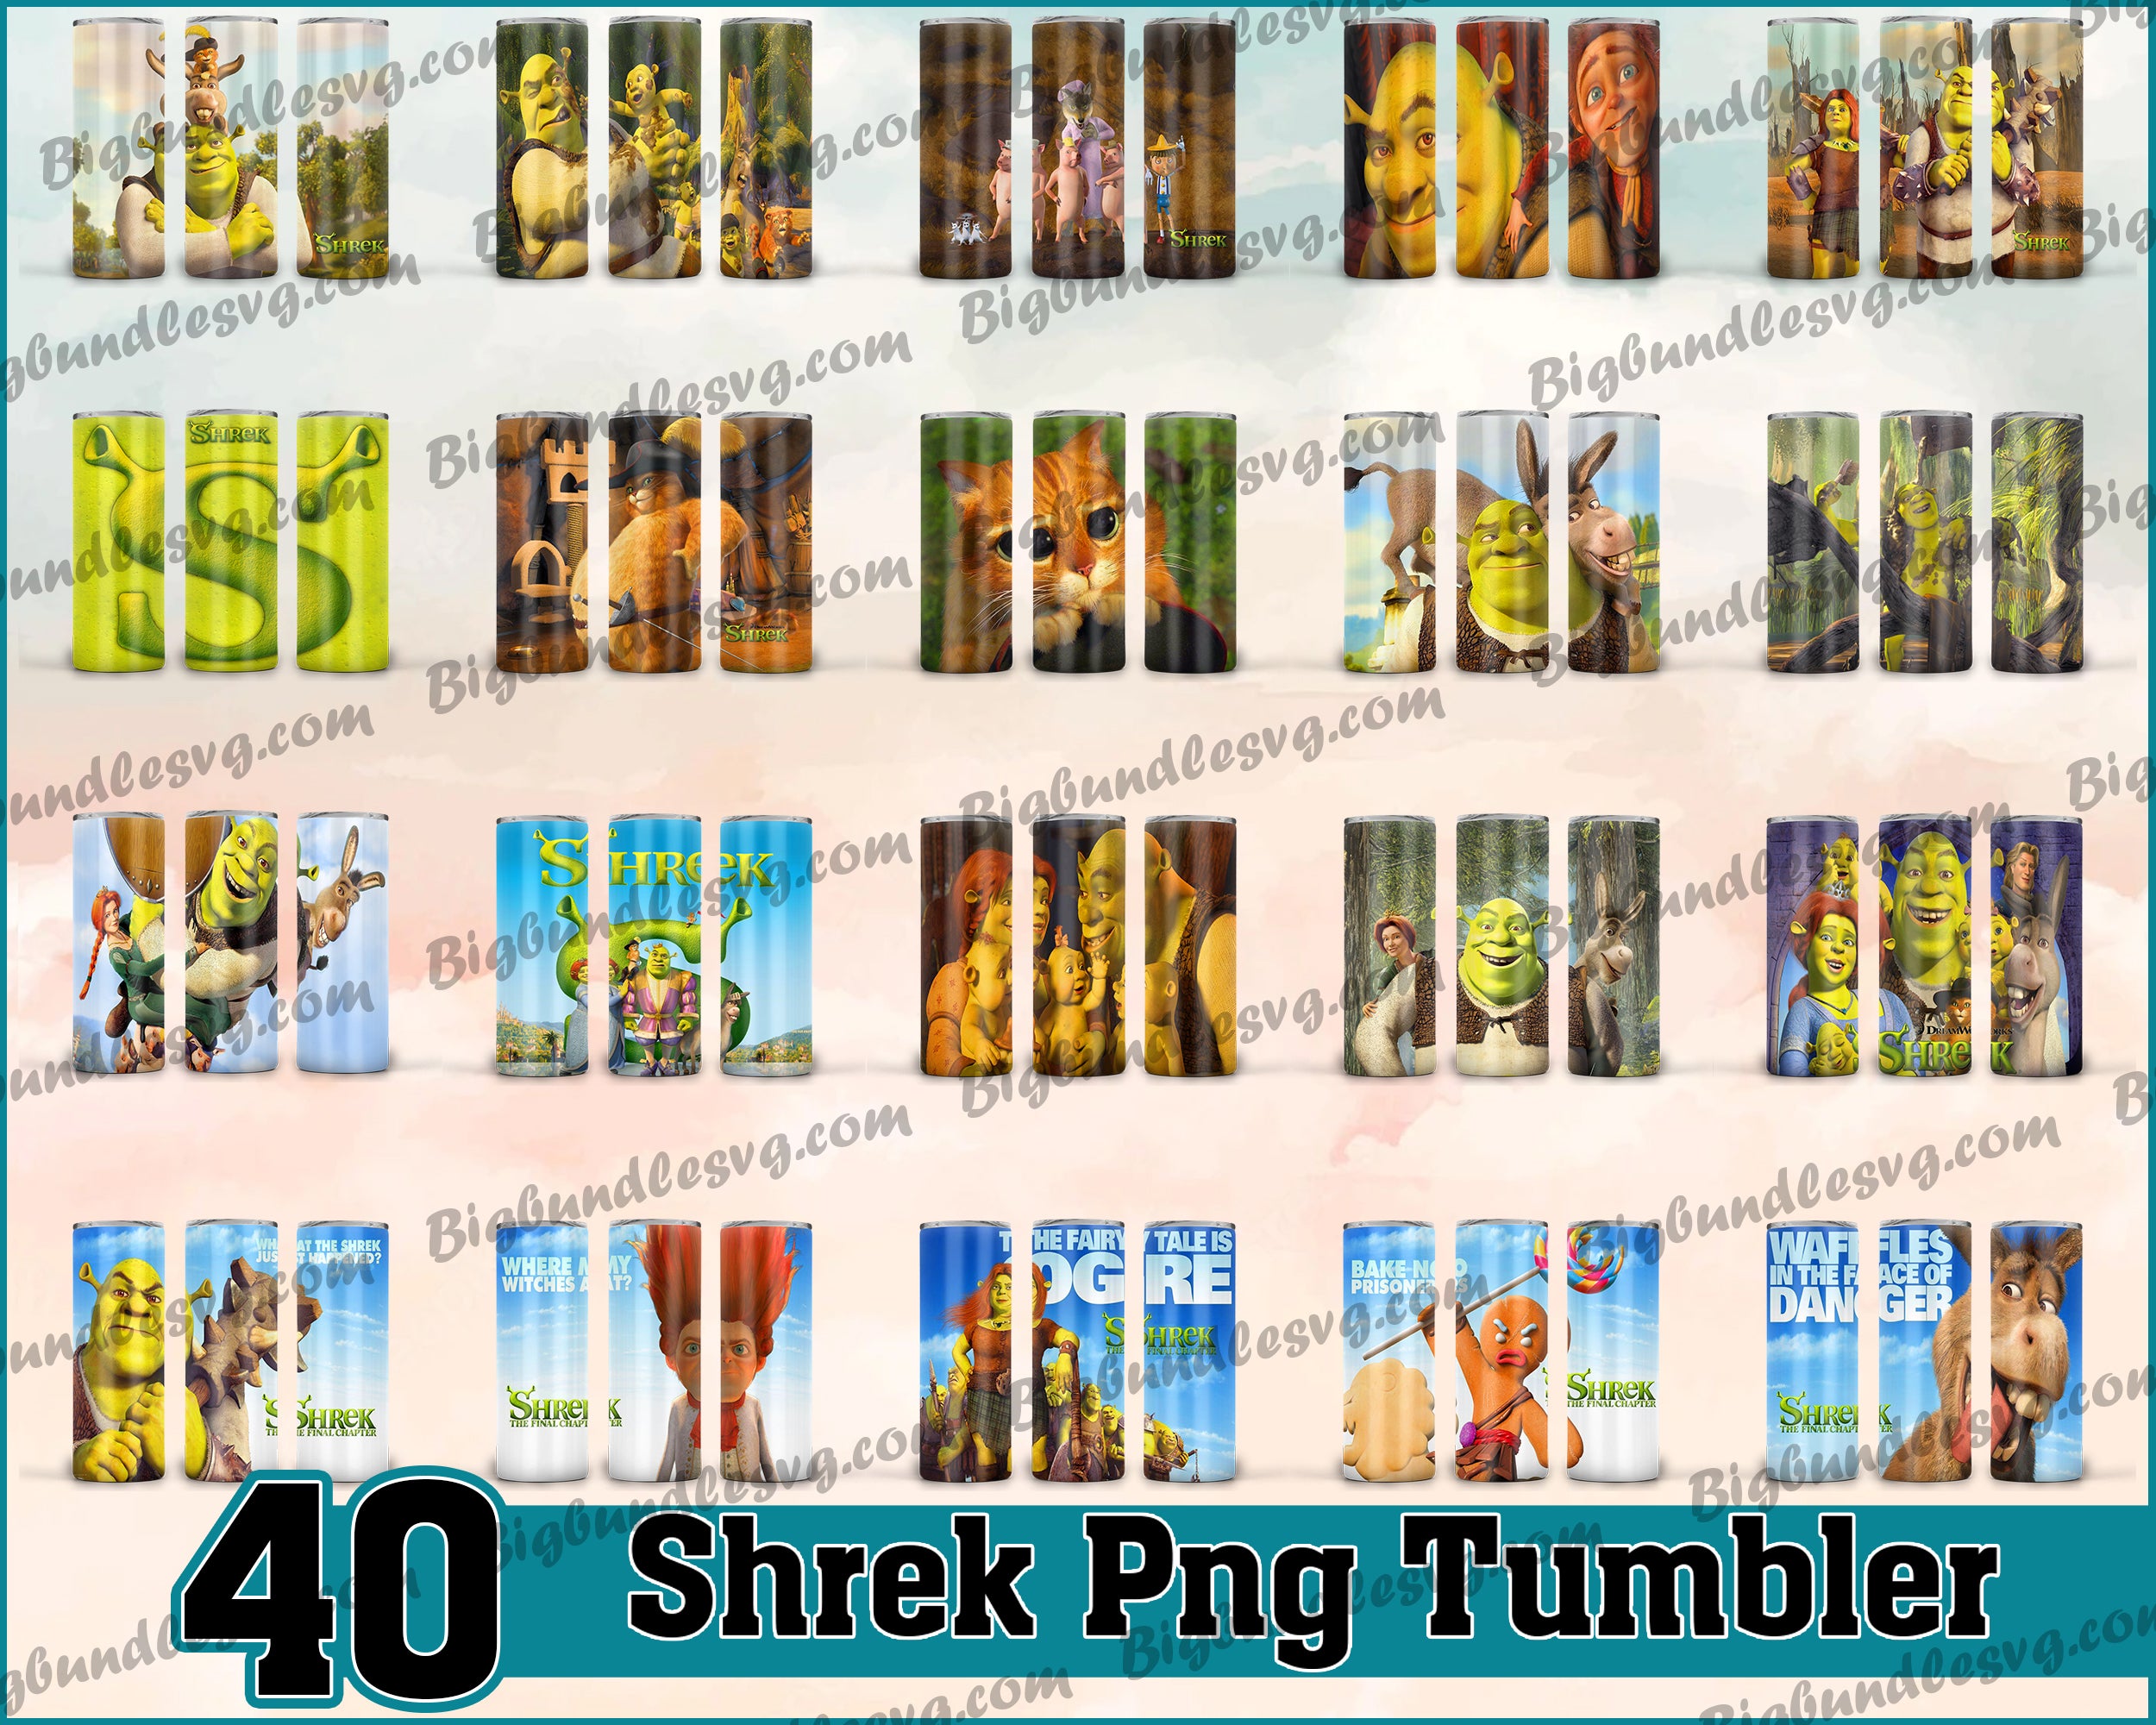 Shrek1 Tumbler - Shrek1 PNG - Tumbler design - Digital download